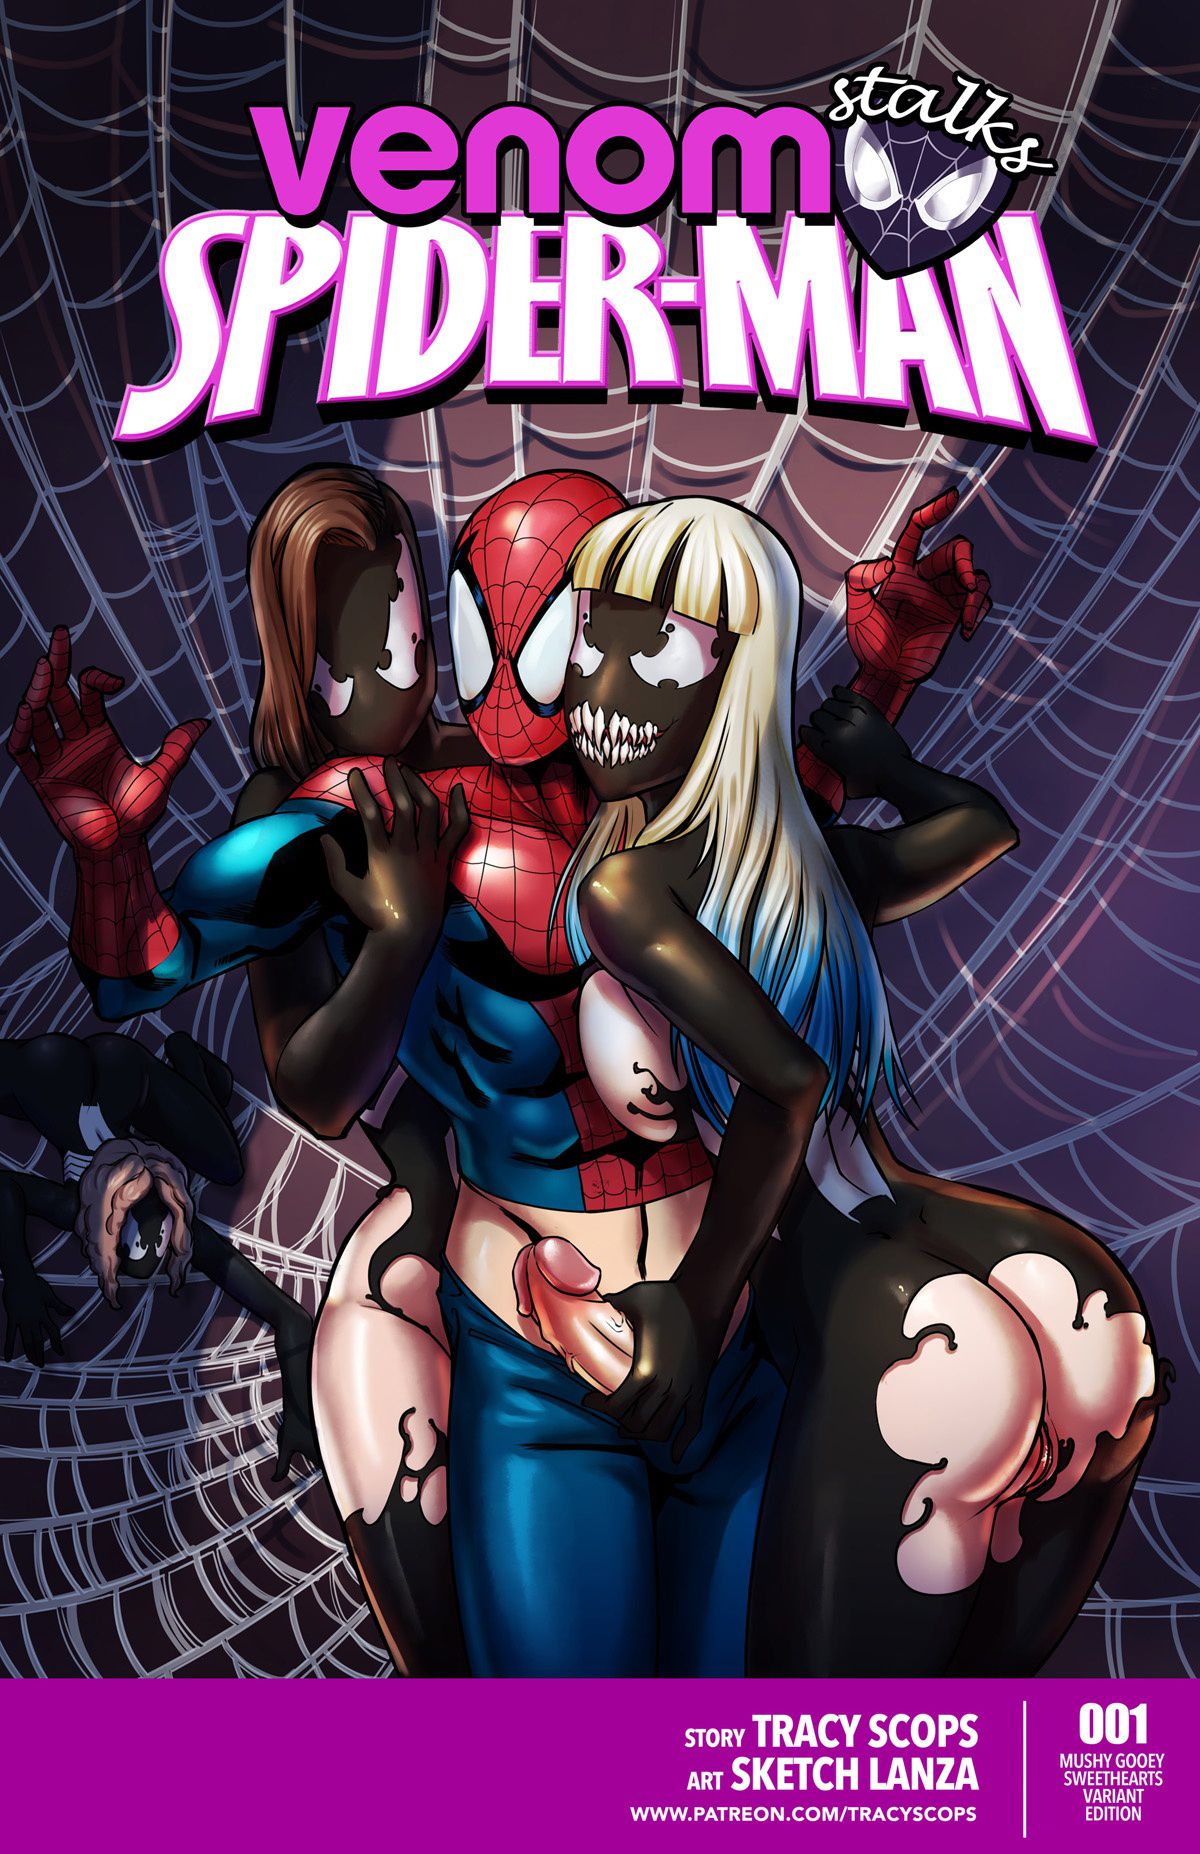 Venom spider man porn